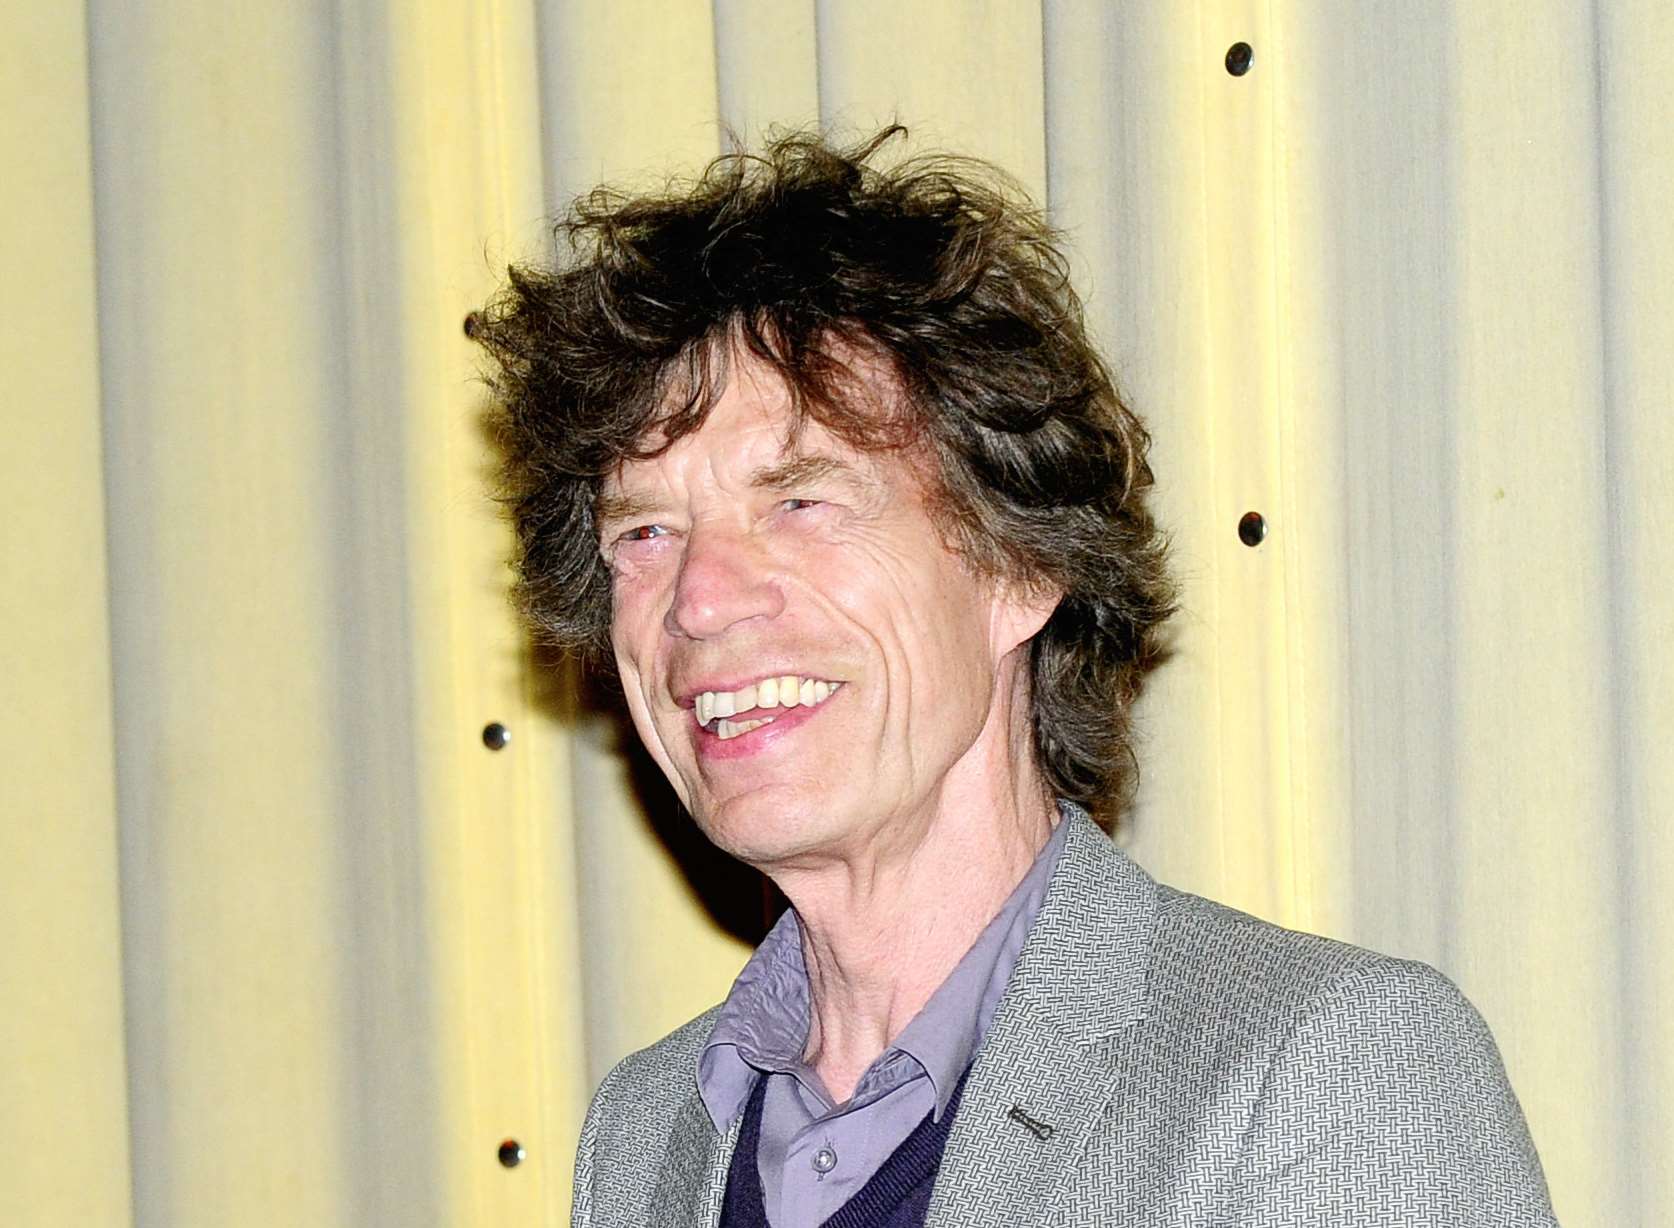 Mick Jagger on a visit back to Dartford